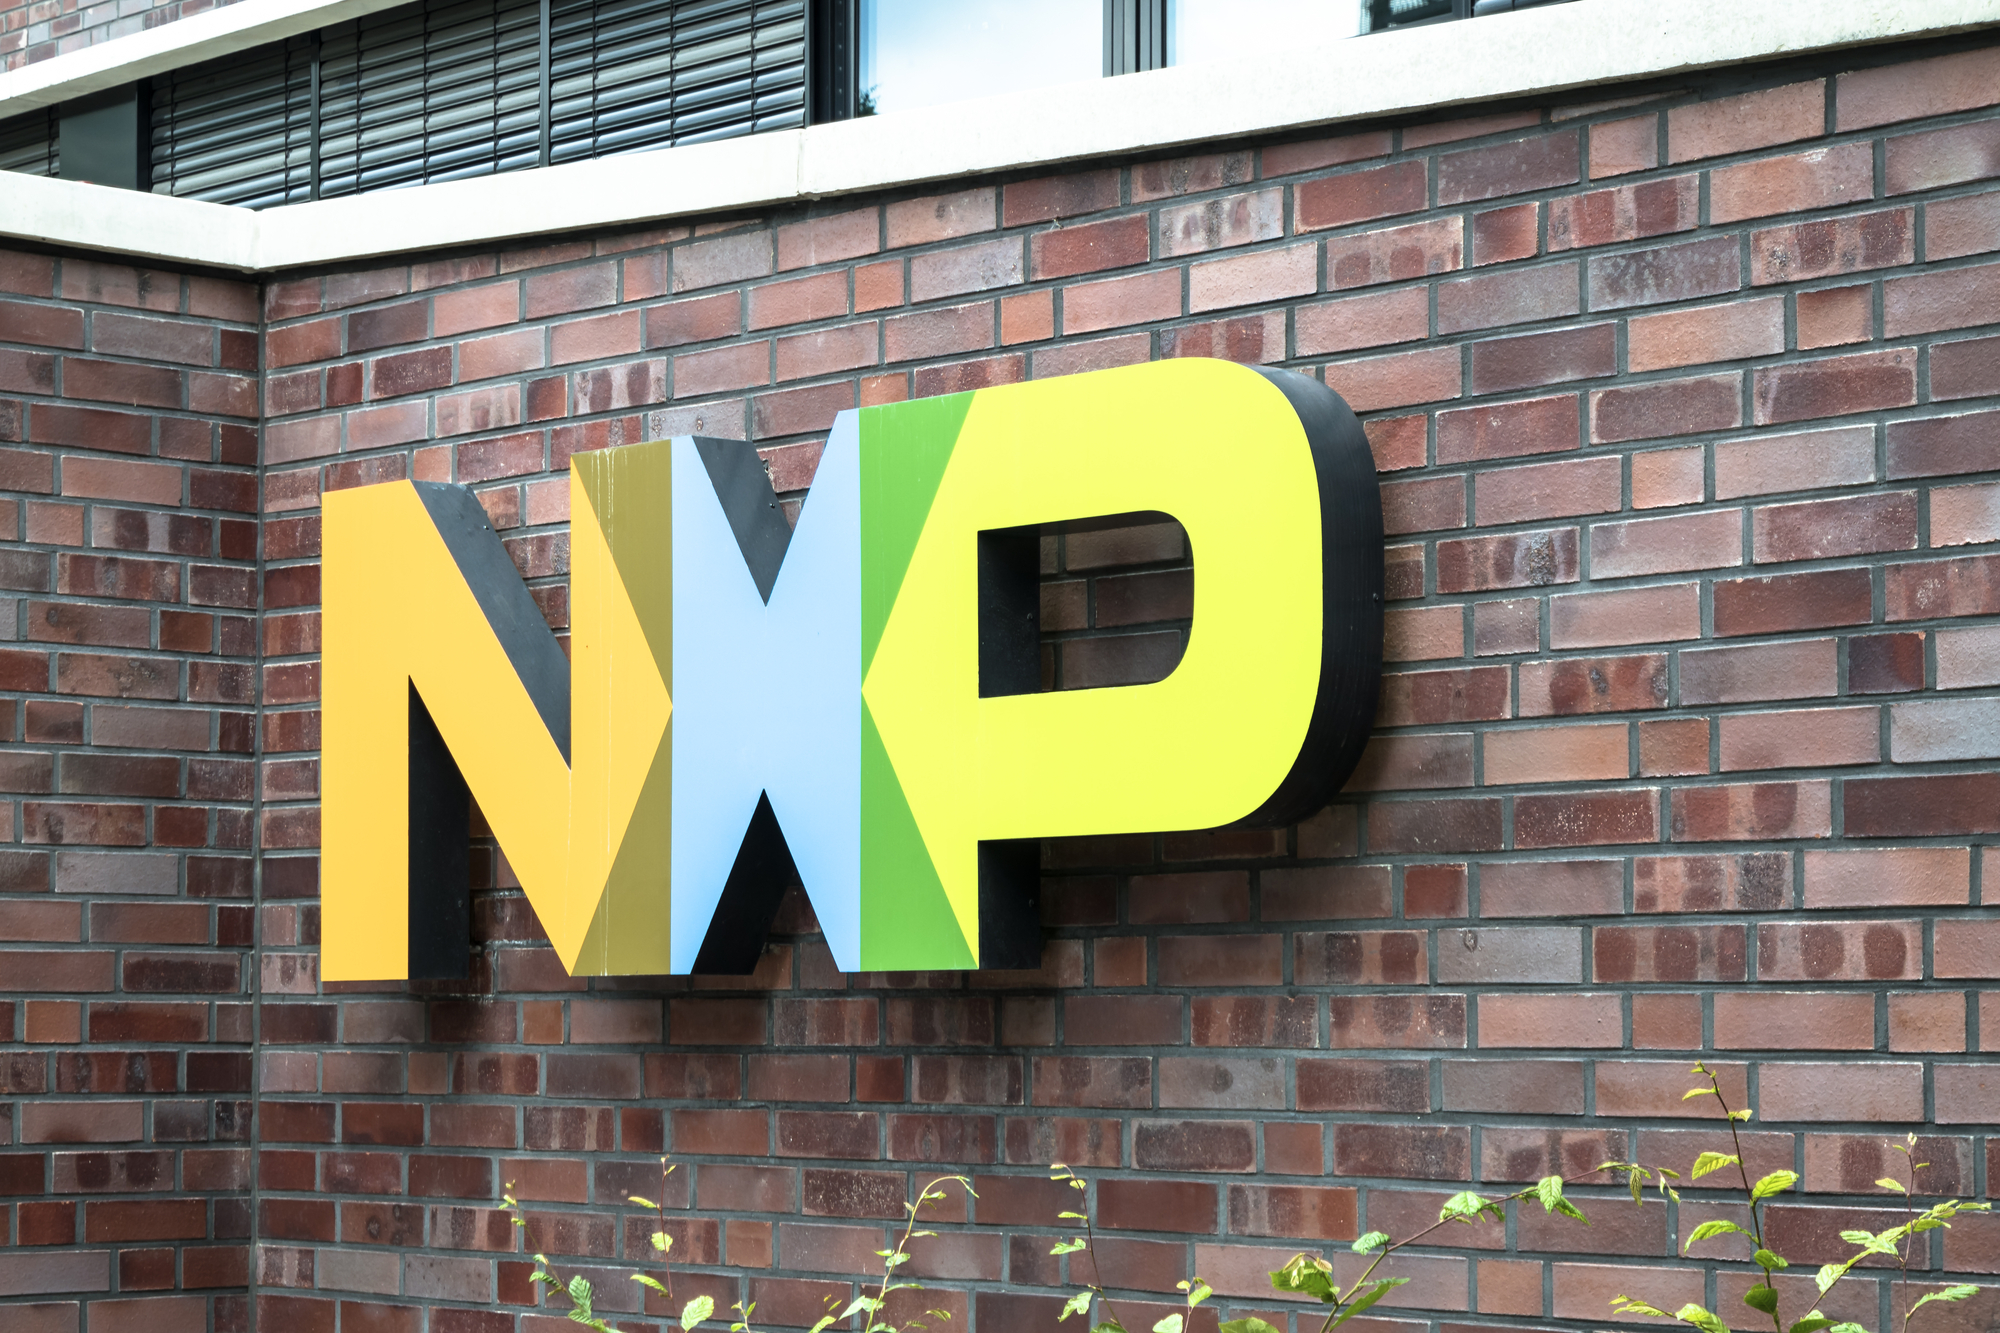 מתקן של NXP בהמבורג, גרמניה. חברות השבבים האירופיות עוברות לבעלויות זרות. אילוסטרציה: depositphotos.com